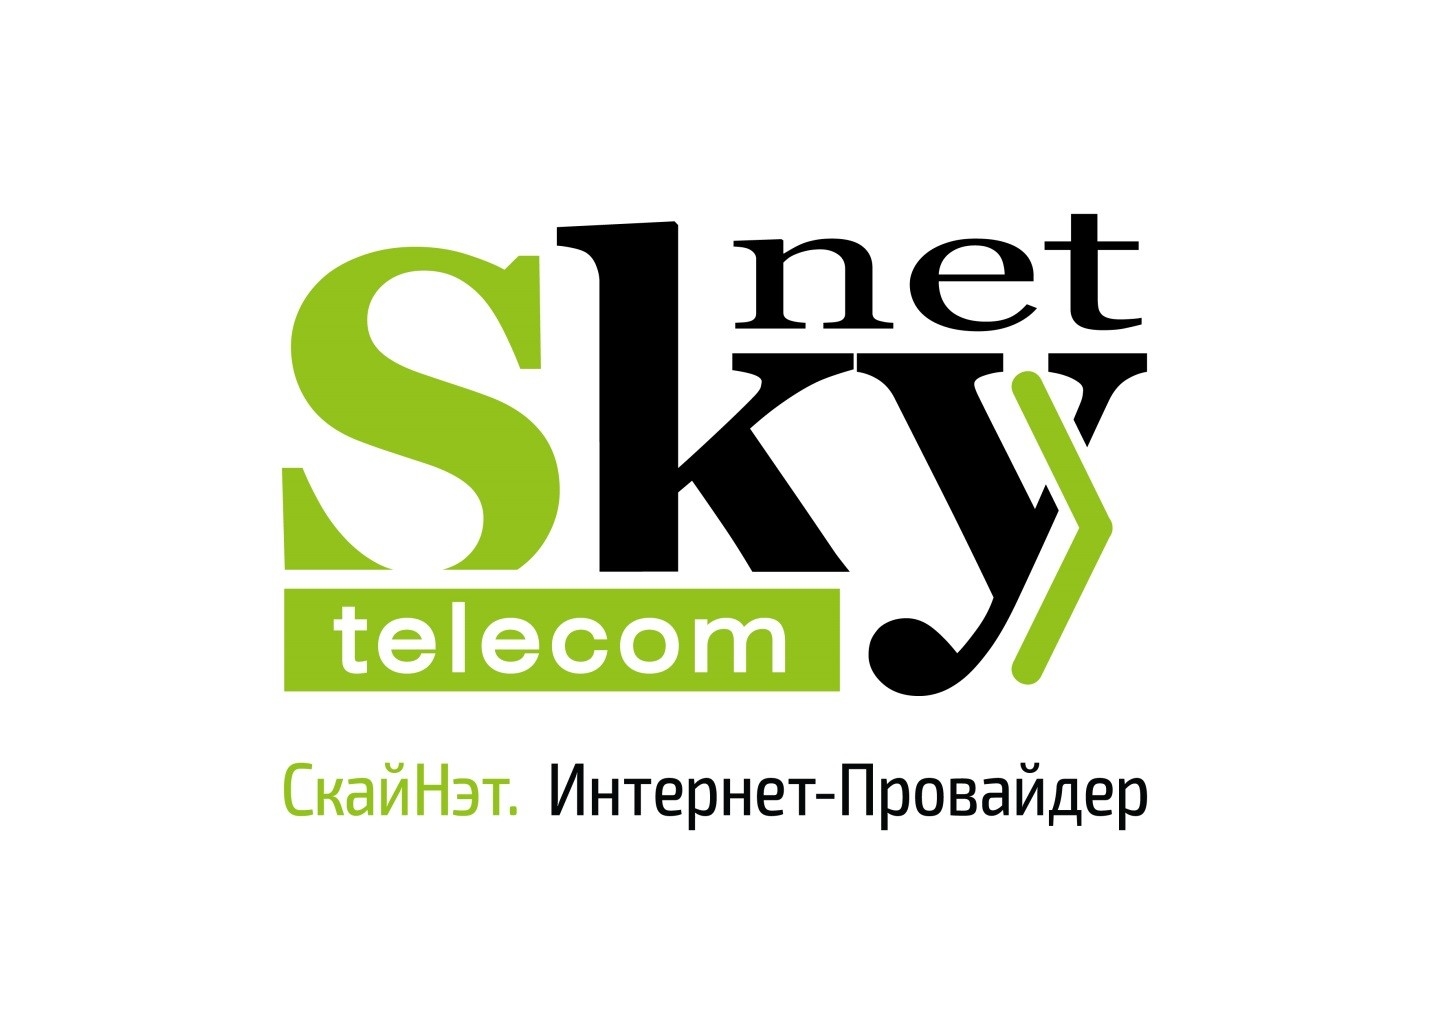 Самый дешевый интернет в СПб - SkyNet